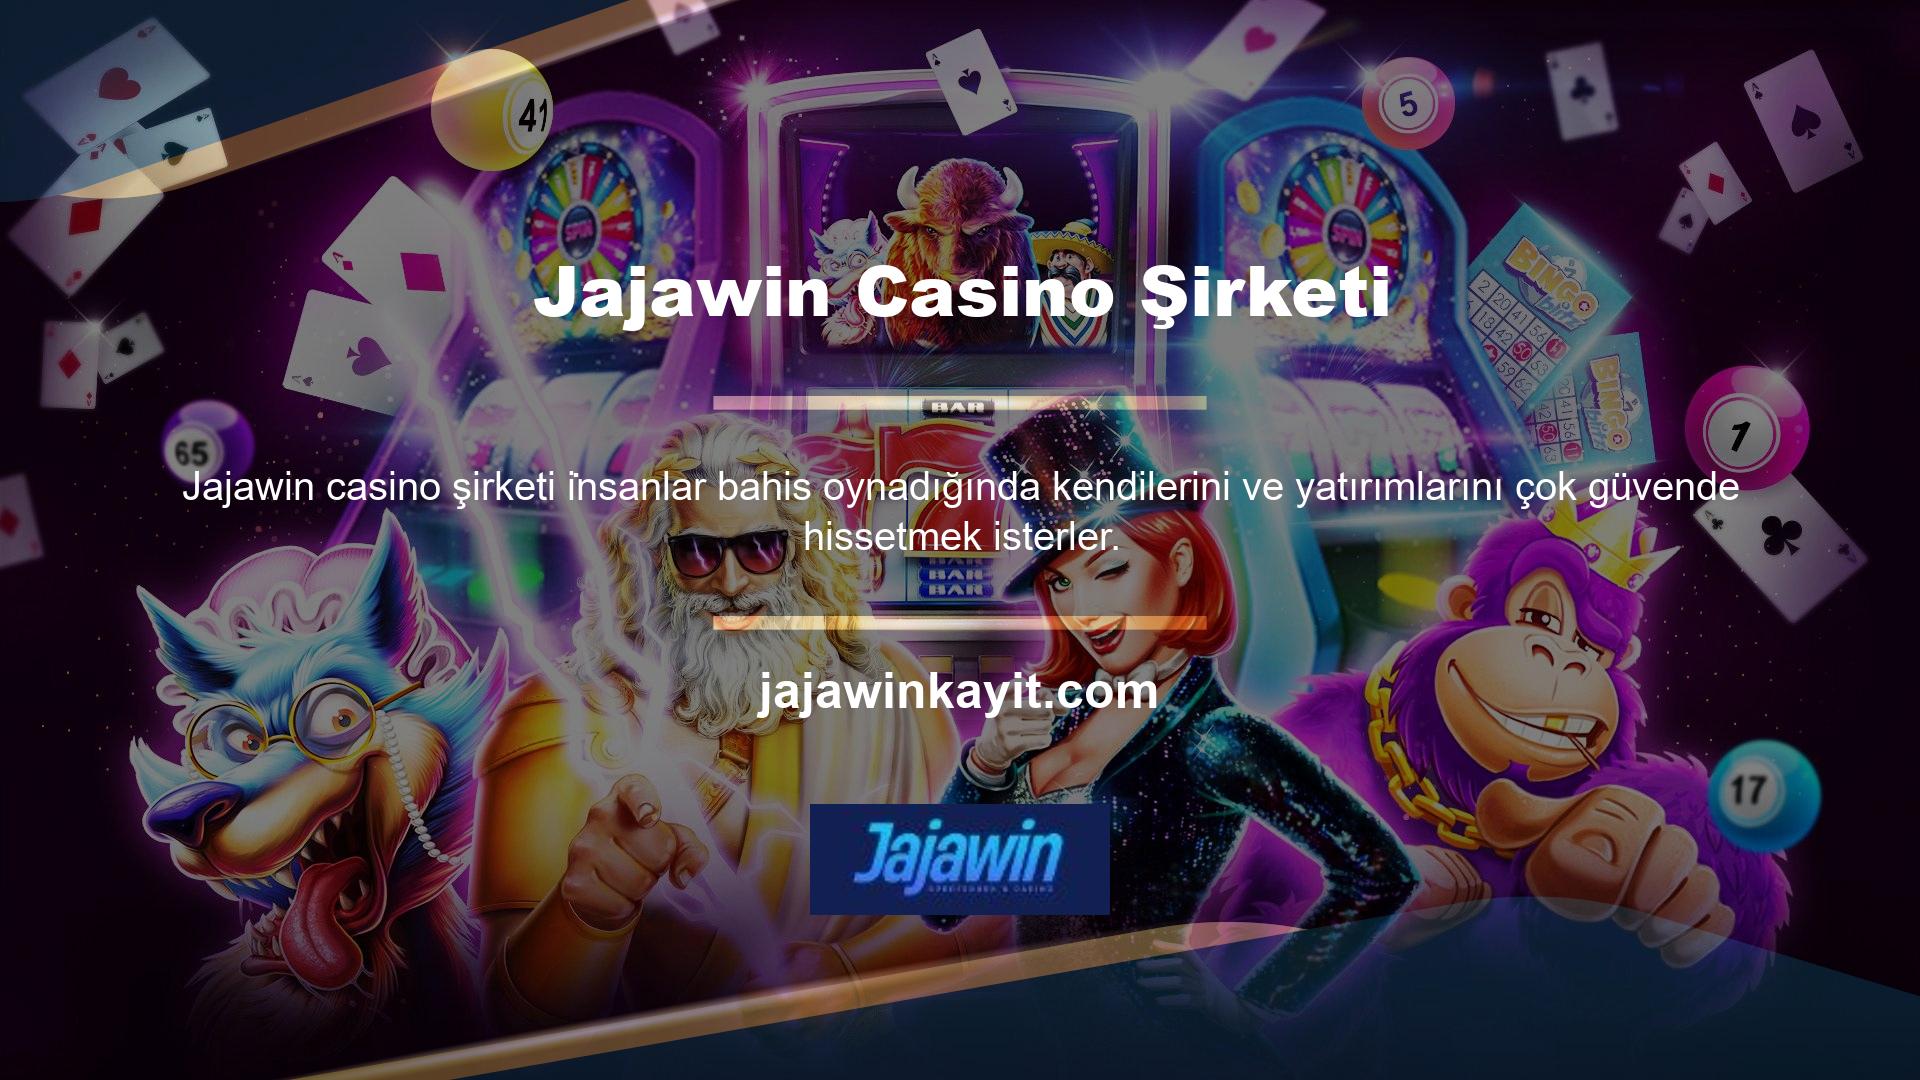 Bunu akılda tutarak Jajawin casino şirketi 24 saat çalışıyor